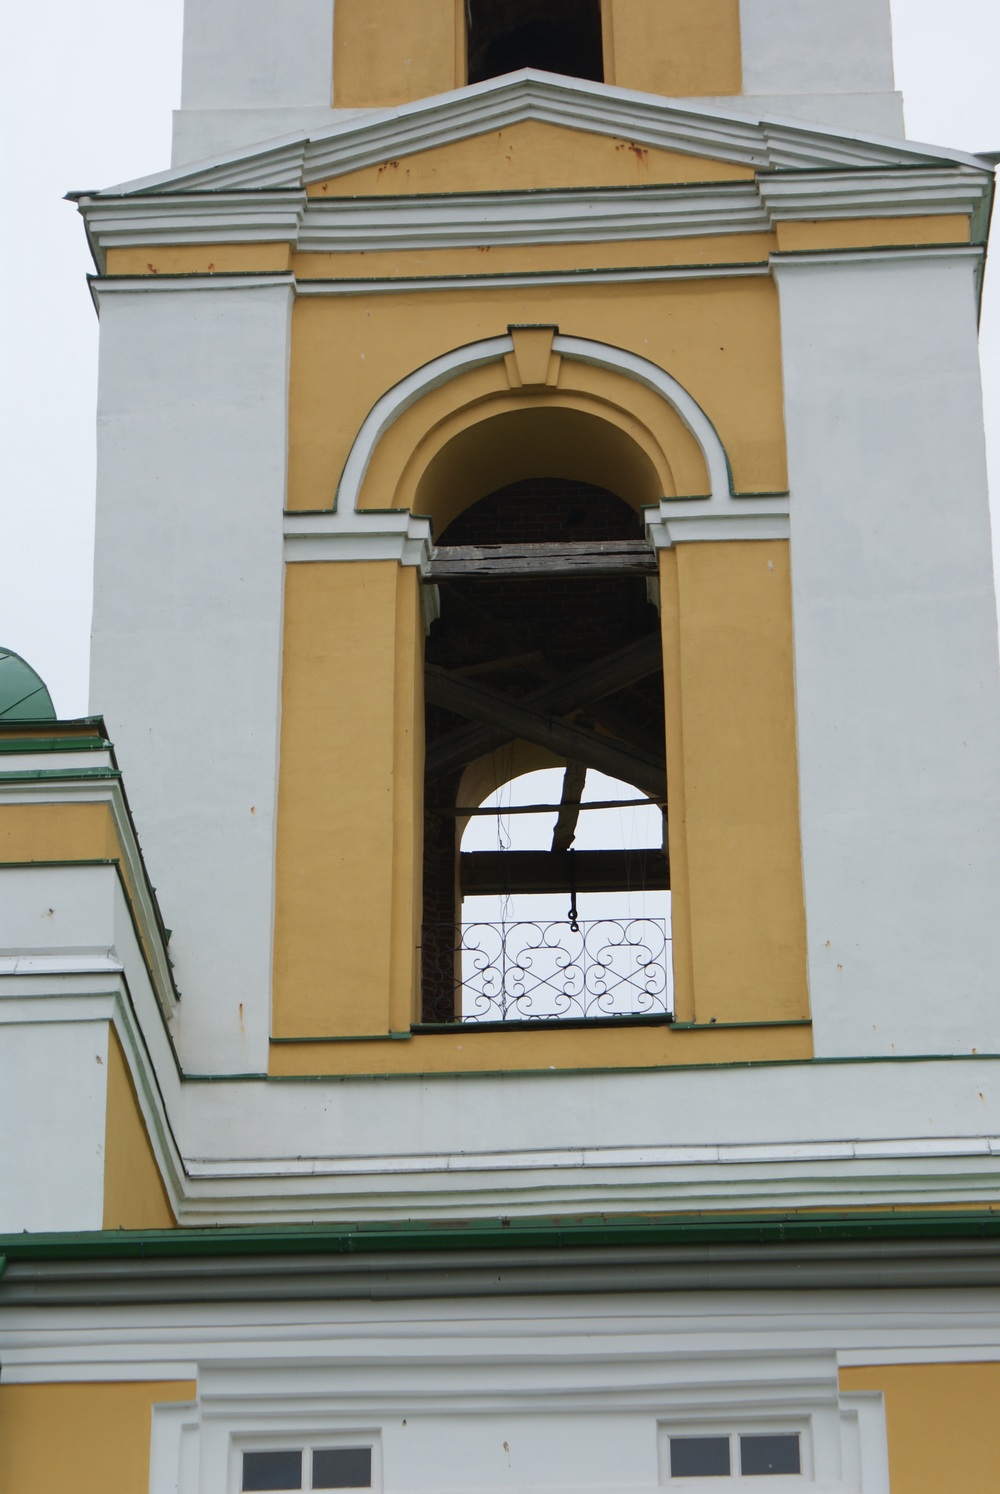 Церковь Преображения, село Мазунино, Сарапульский район Удмуртской Республики